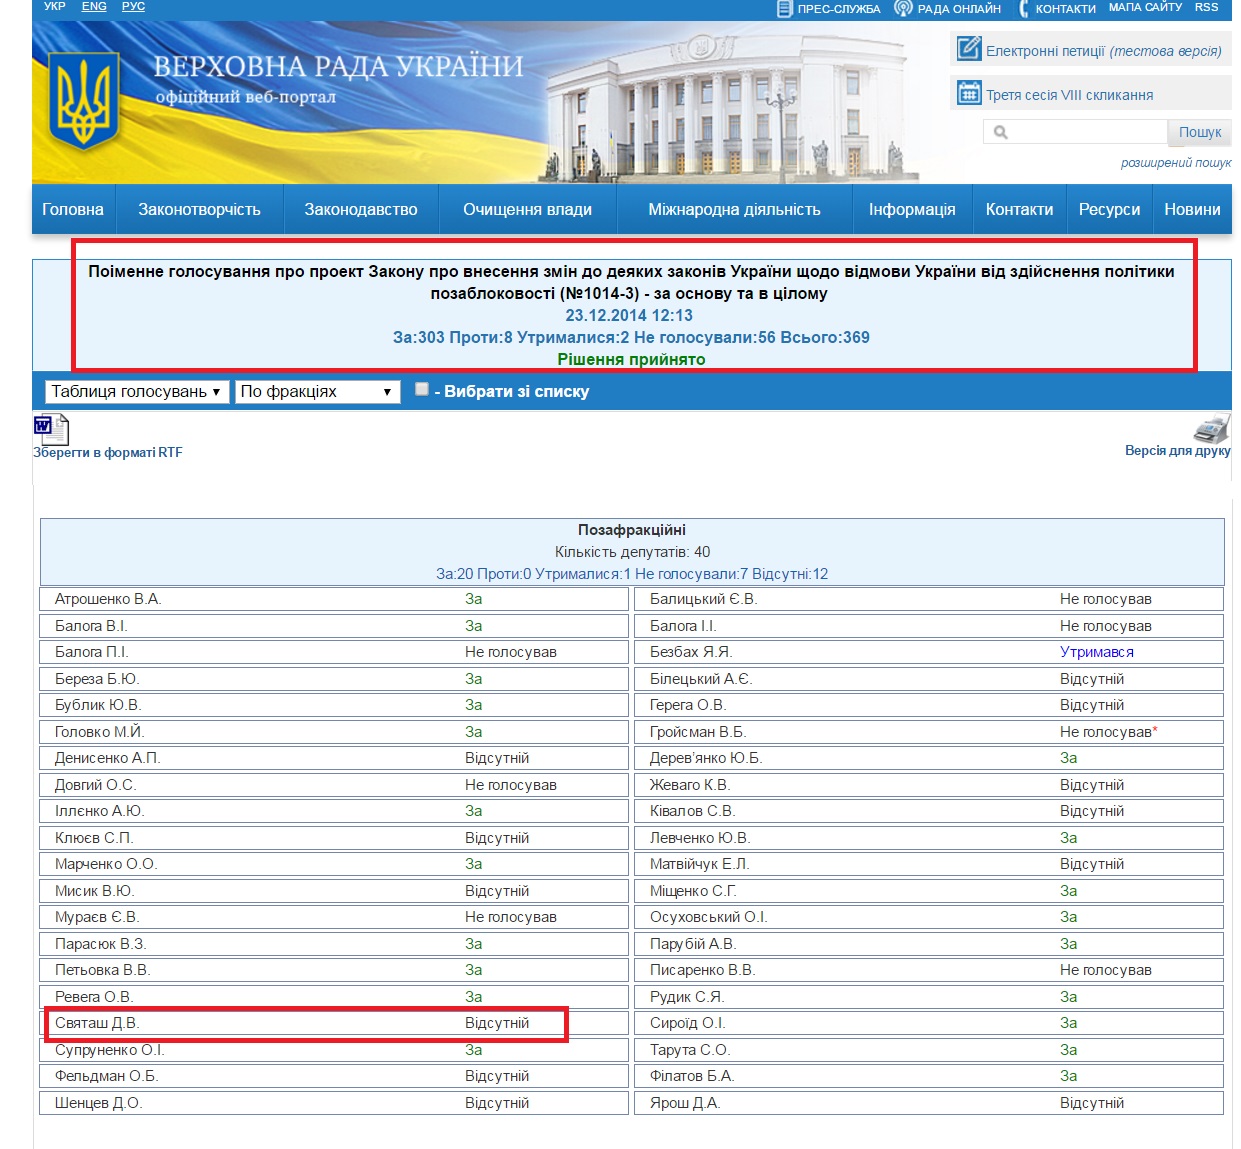 http://w1.c1.rada.gov.ua/pls/radan_gs09/ns_golos?g_id=187